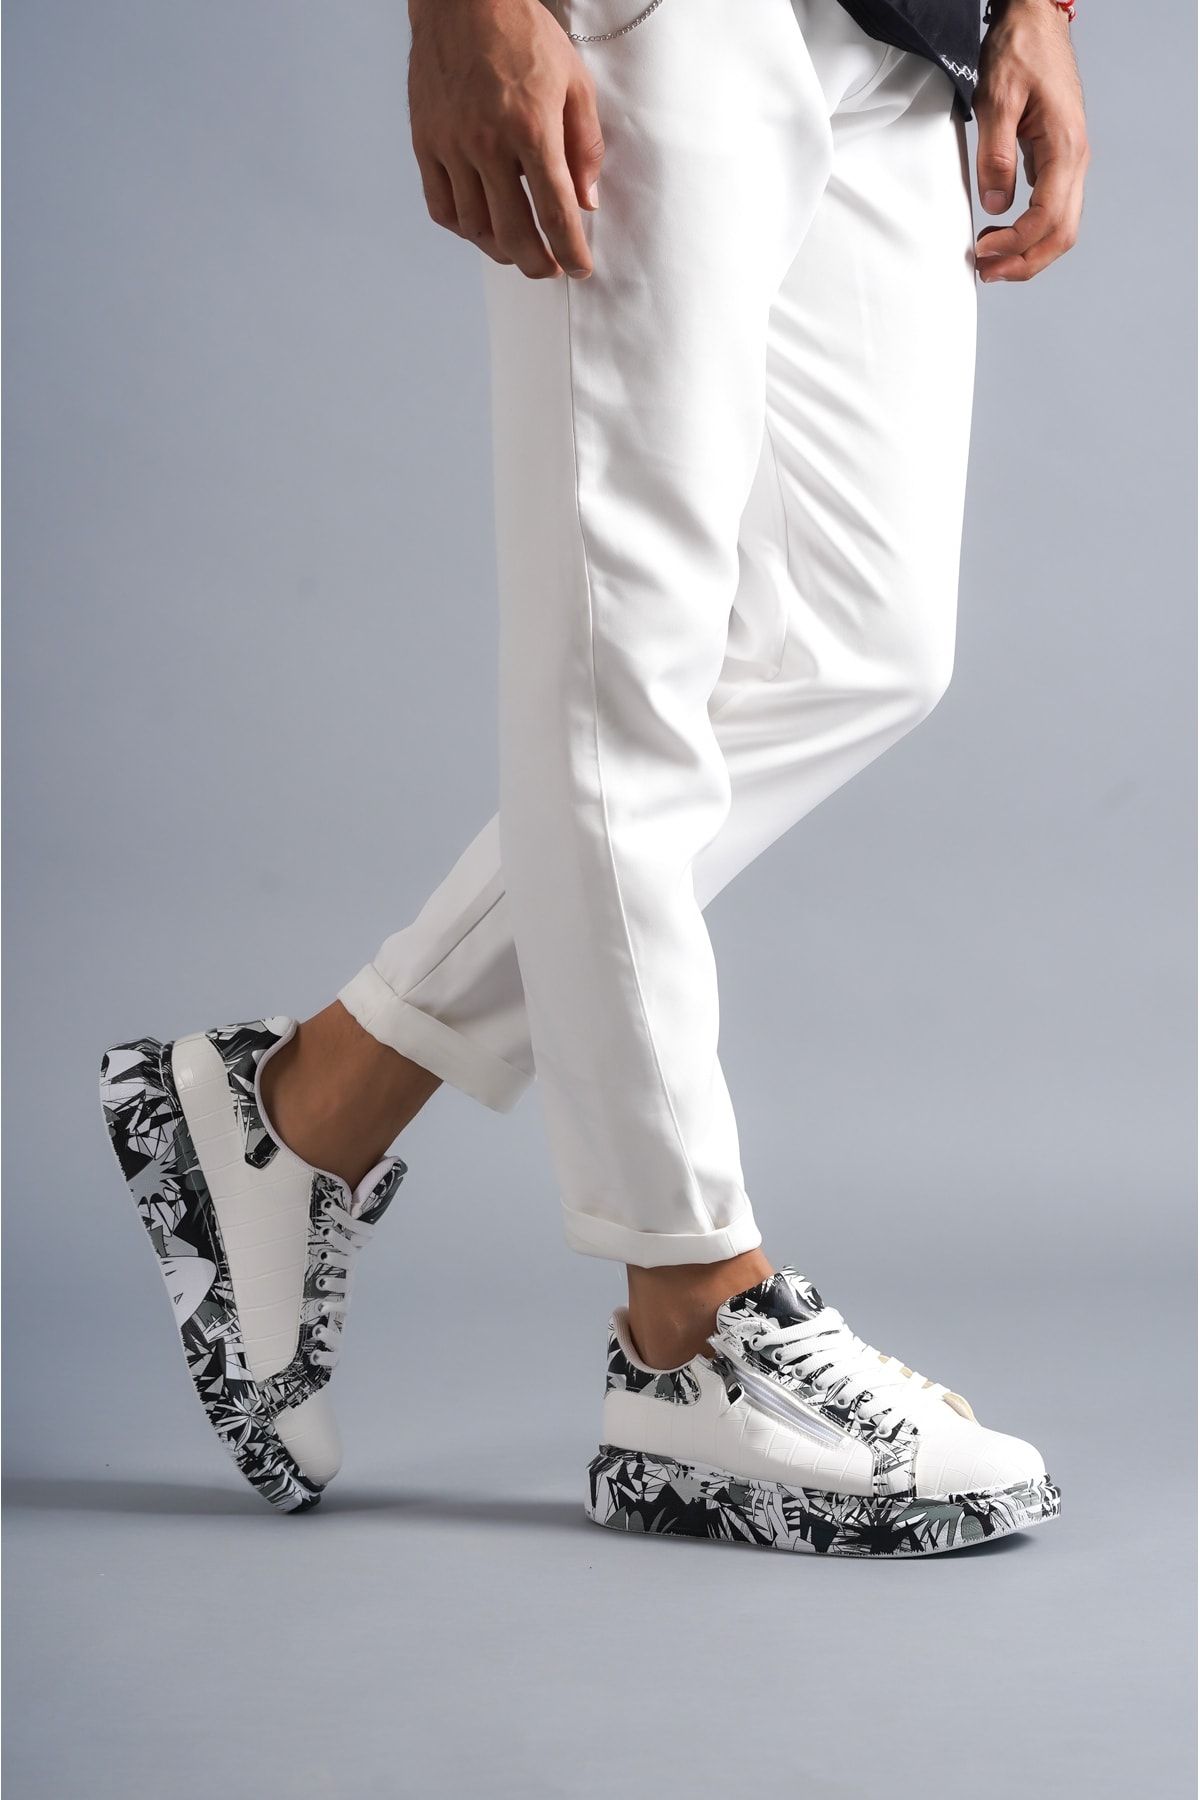 BZ Moda B02 BT Bağcıklı Fermuarlı Timsah Desenli Siyah Baskılı Ortopedik Taban Erkek Sneaker Ayakkabı Beyaz